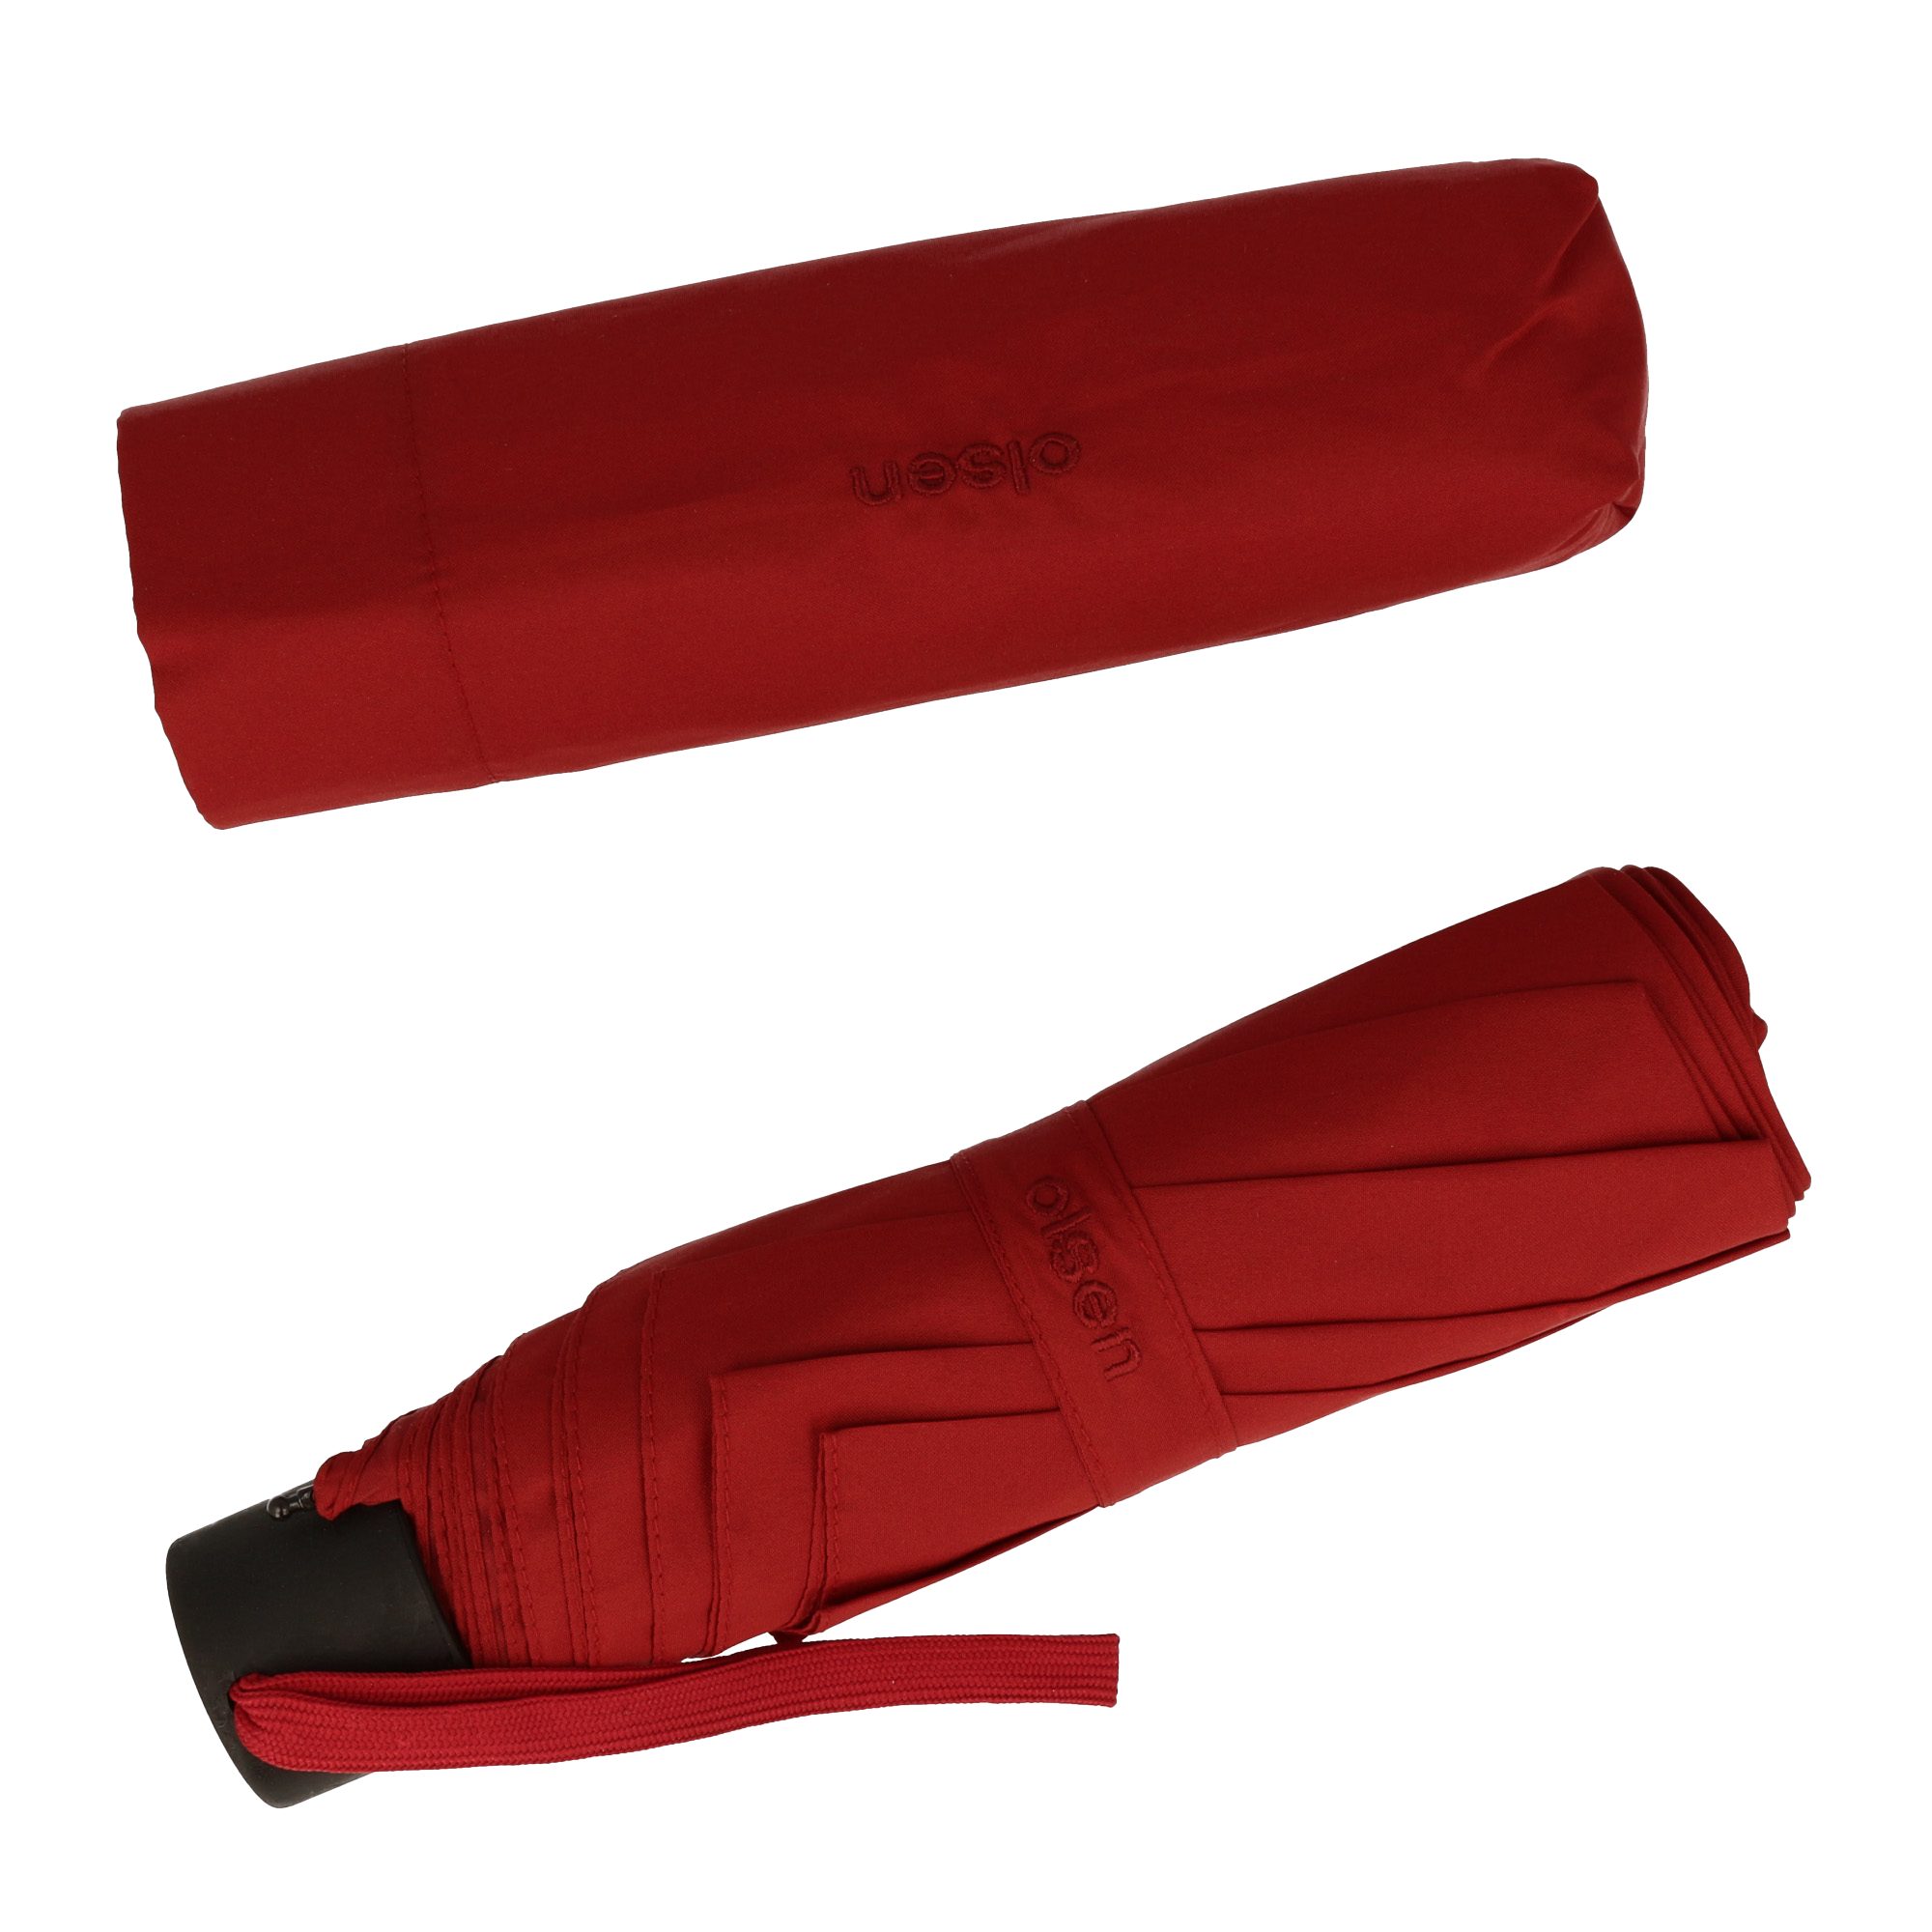 Olsen Taschenregenschirm Kleiner Regenschirm fröhlichen in für Farben Rot die Handtasche